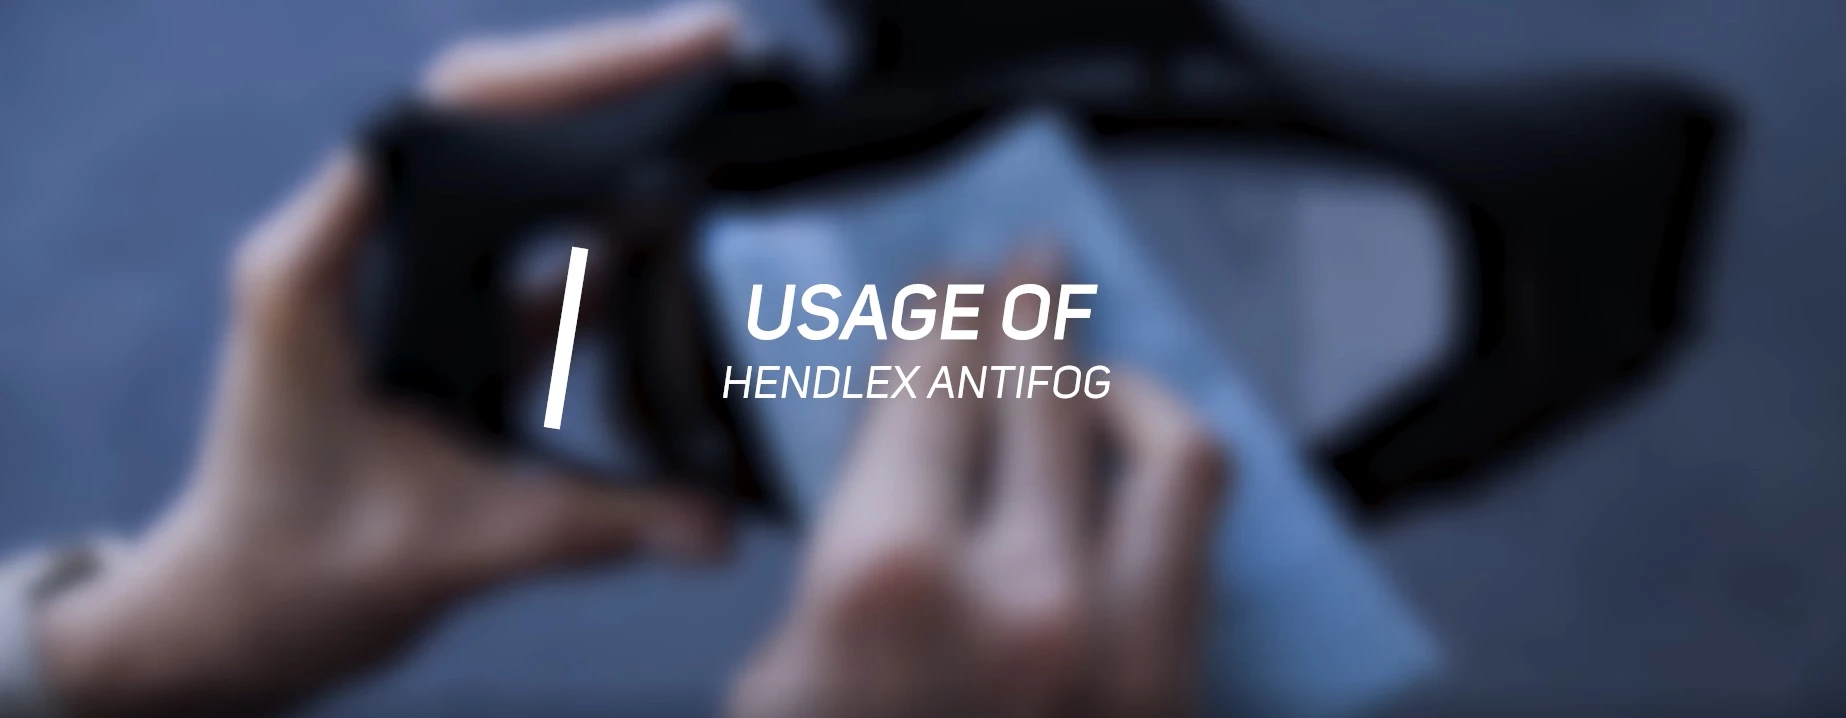 Hendlex Windshield Antifog - Car, Bathroom Mirror, Motorcycle Visor Anti Fog  6.7 oz